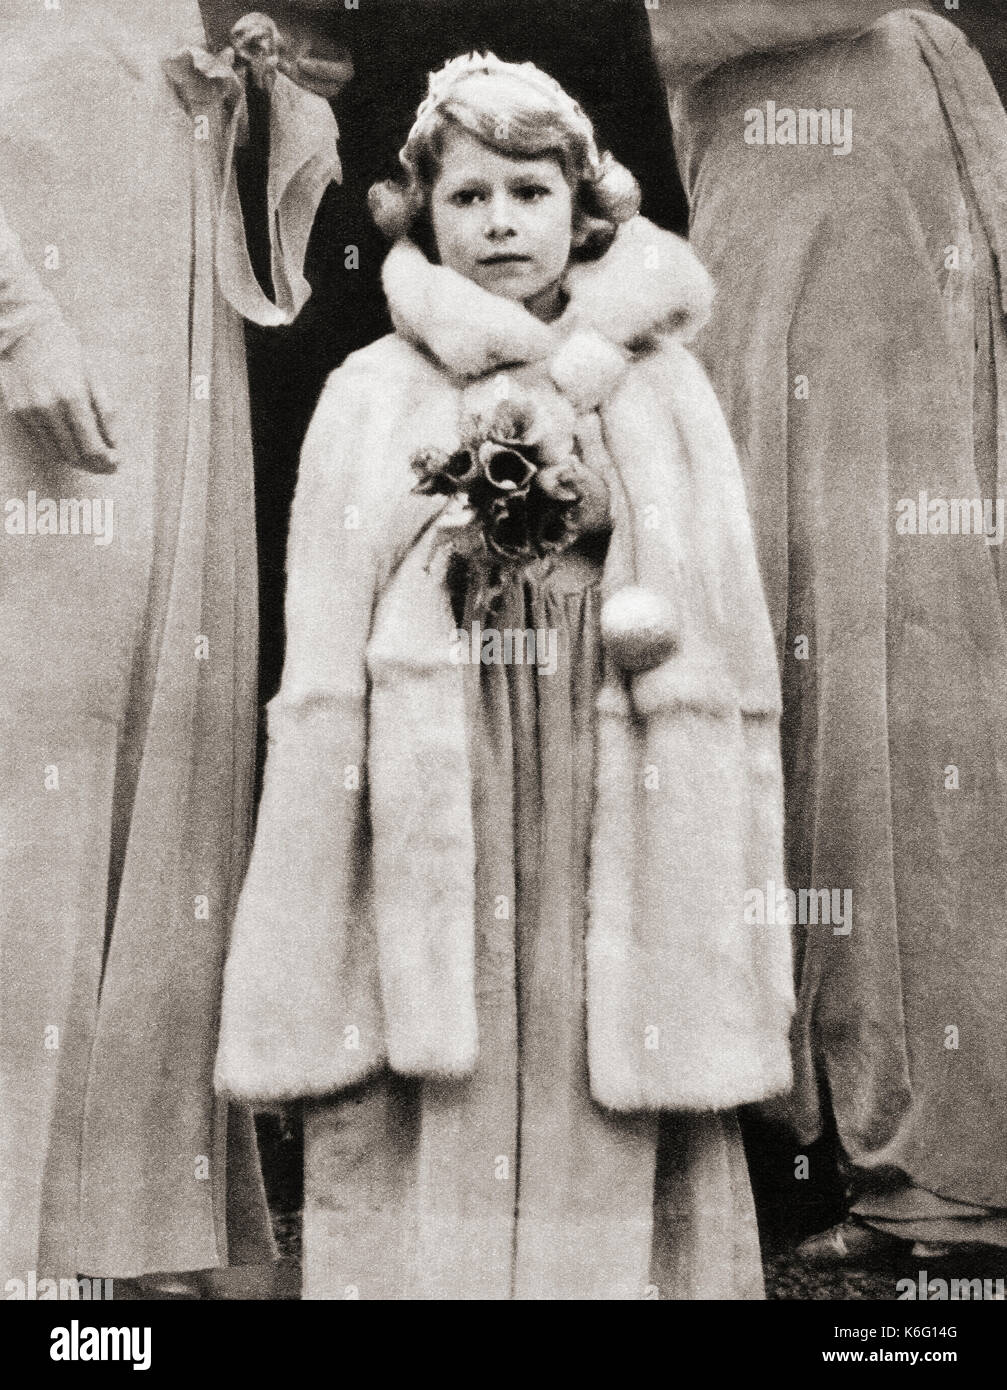 La princesse Elizabeth de York, vue ici comme demoiselle d'honneur au mariage de Lady May Cambridge en 1931. Princesse Elizabeth de York, future Elizabeth II, 1926 - 2022. Reine du Royaume-Uni. Du livre de Coronation du roi George VI et de la reine Elizabeth, publié en 1937. Banque D'Images